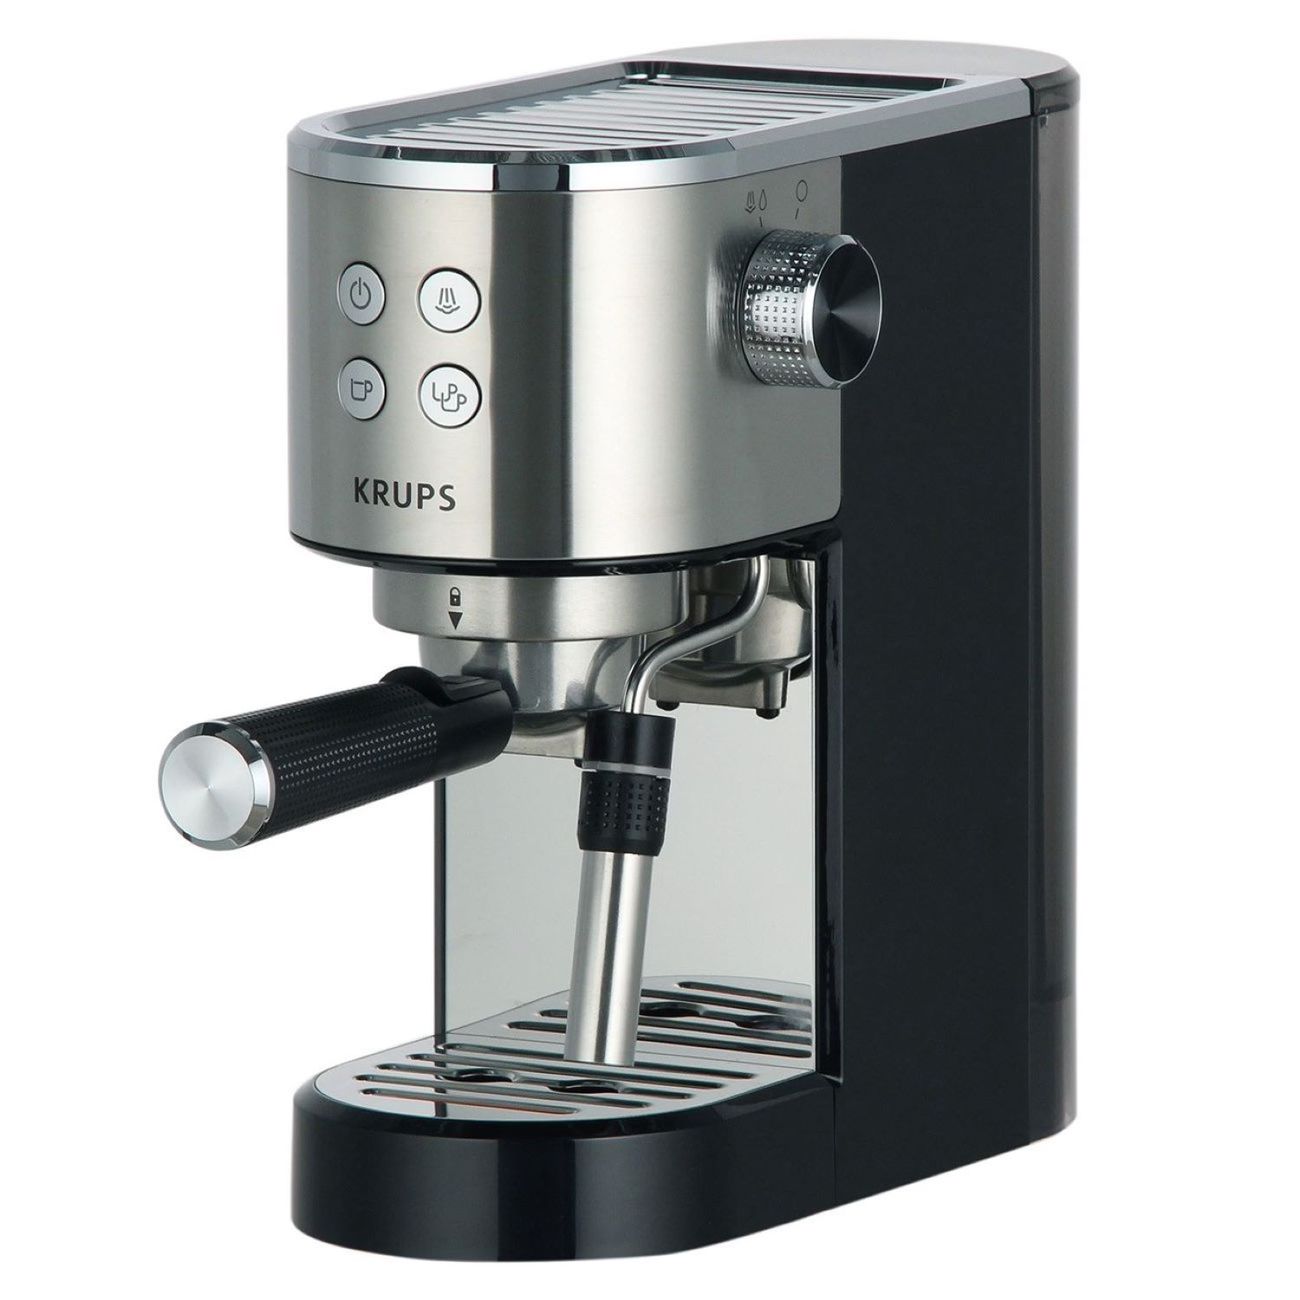 Рожковая кофеварка KRUPS XP444C10 серебристый, черный рожковая кофеварка xp444c10 с кофемолкой krups fast touch gx204d10